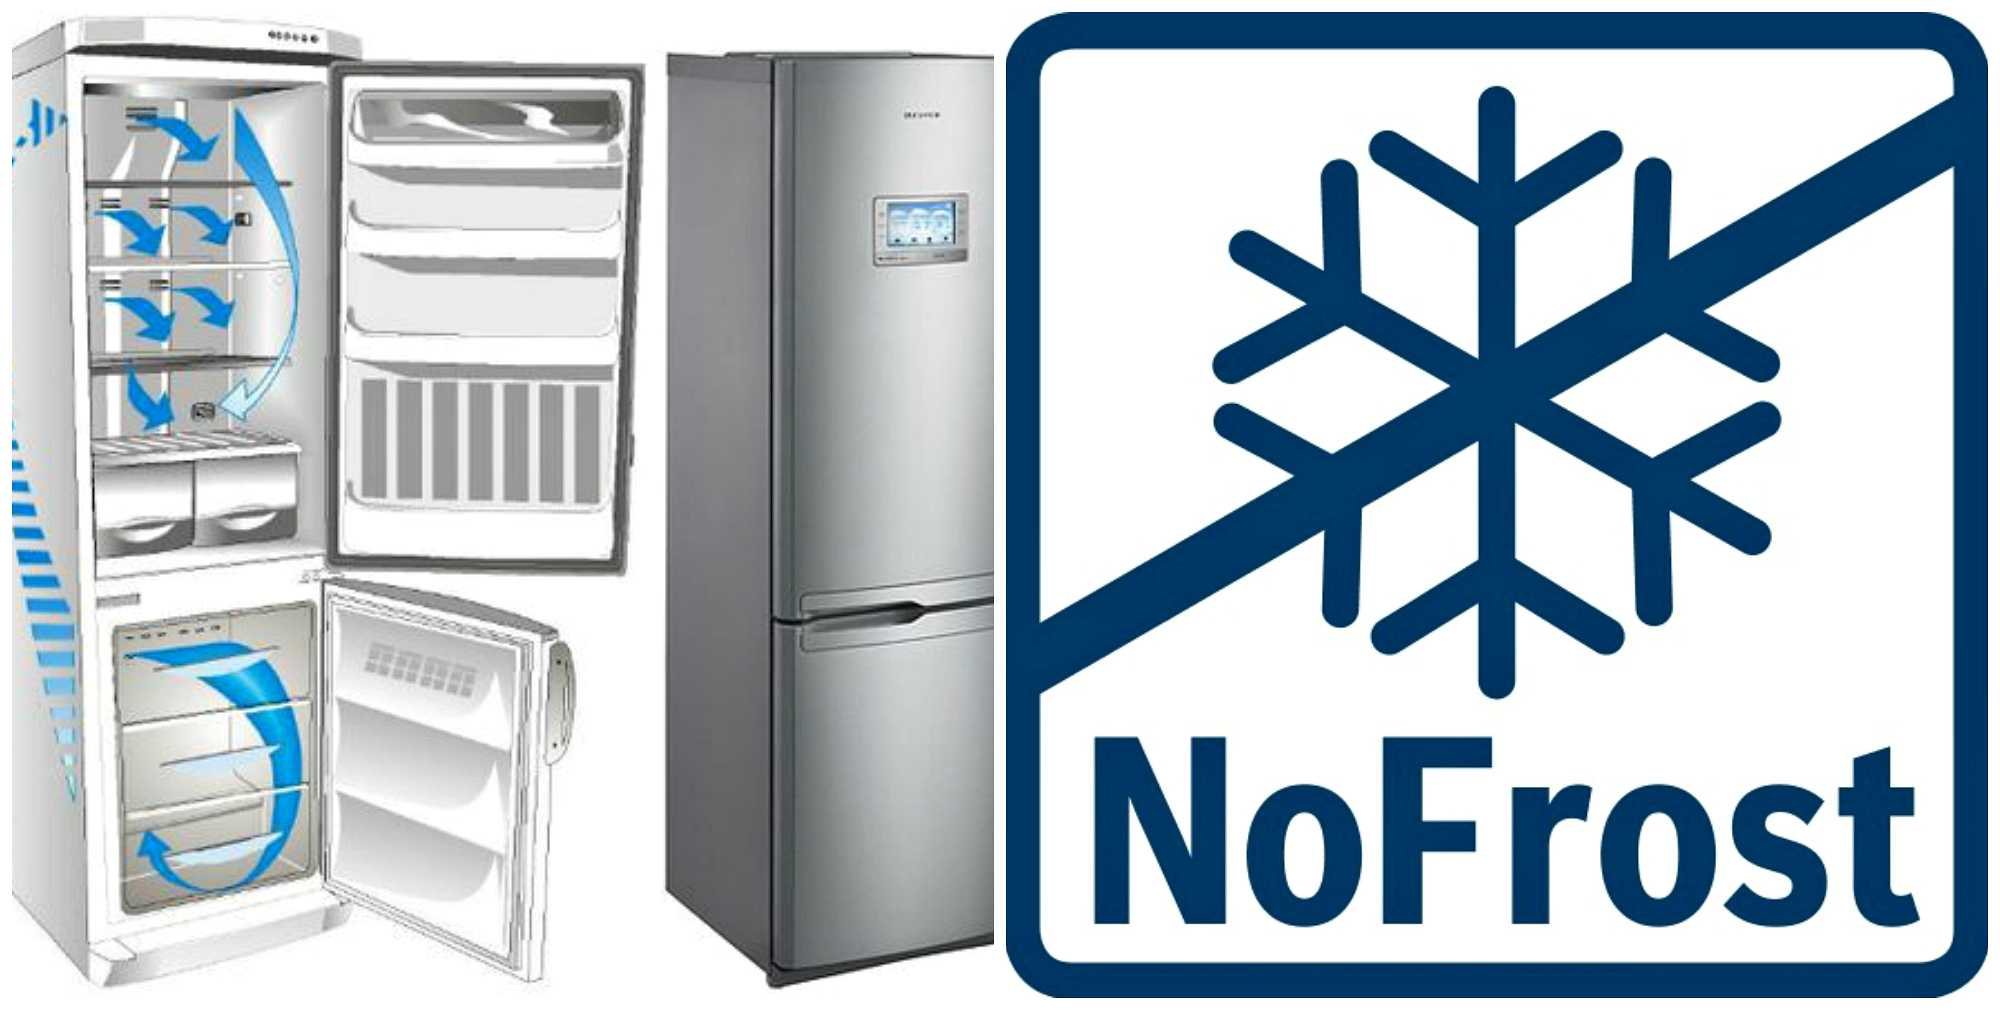 No frost что это такое в холодильнике, плюсы, минусы, нужно ли размораживать его